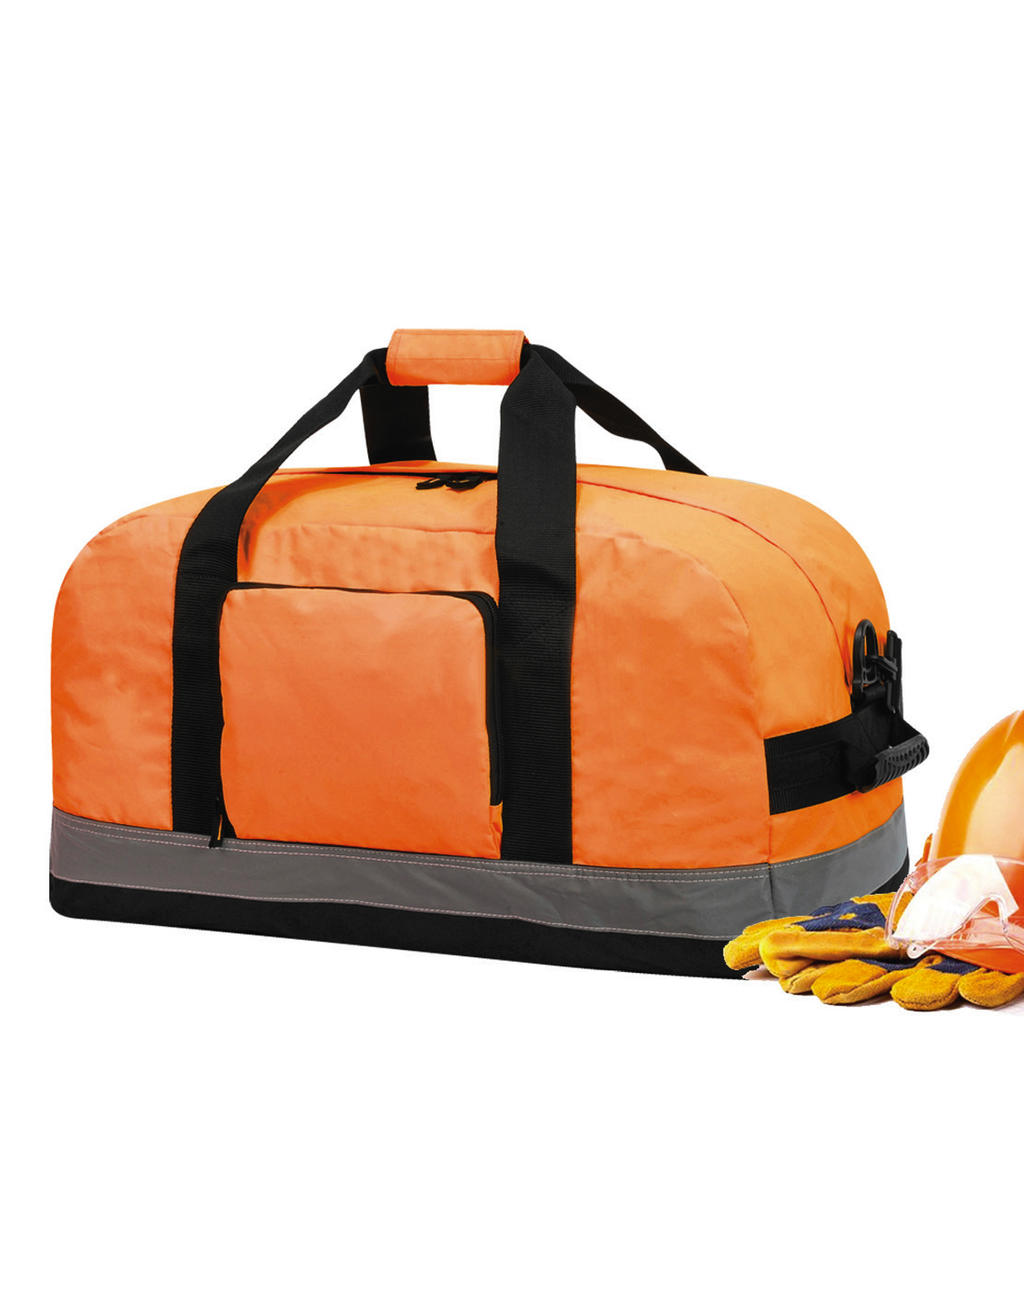  Seattle Essential Hi-Vis Work Bag in Farbe Hi-Vis Orange/Black